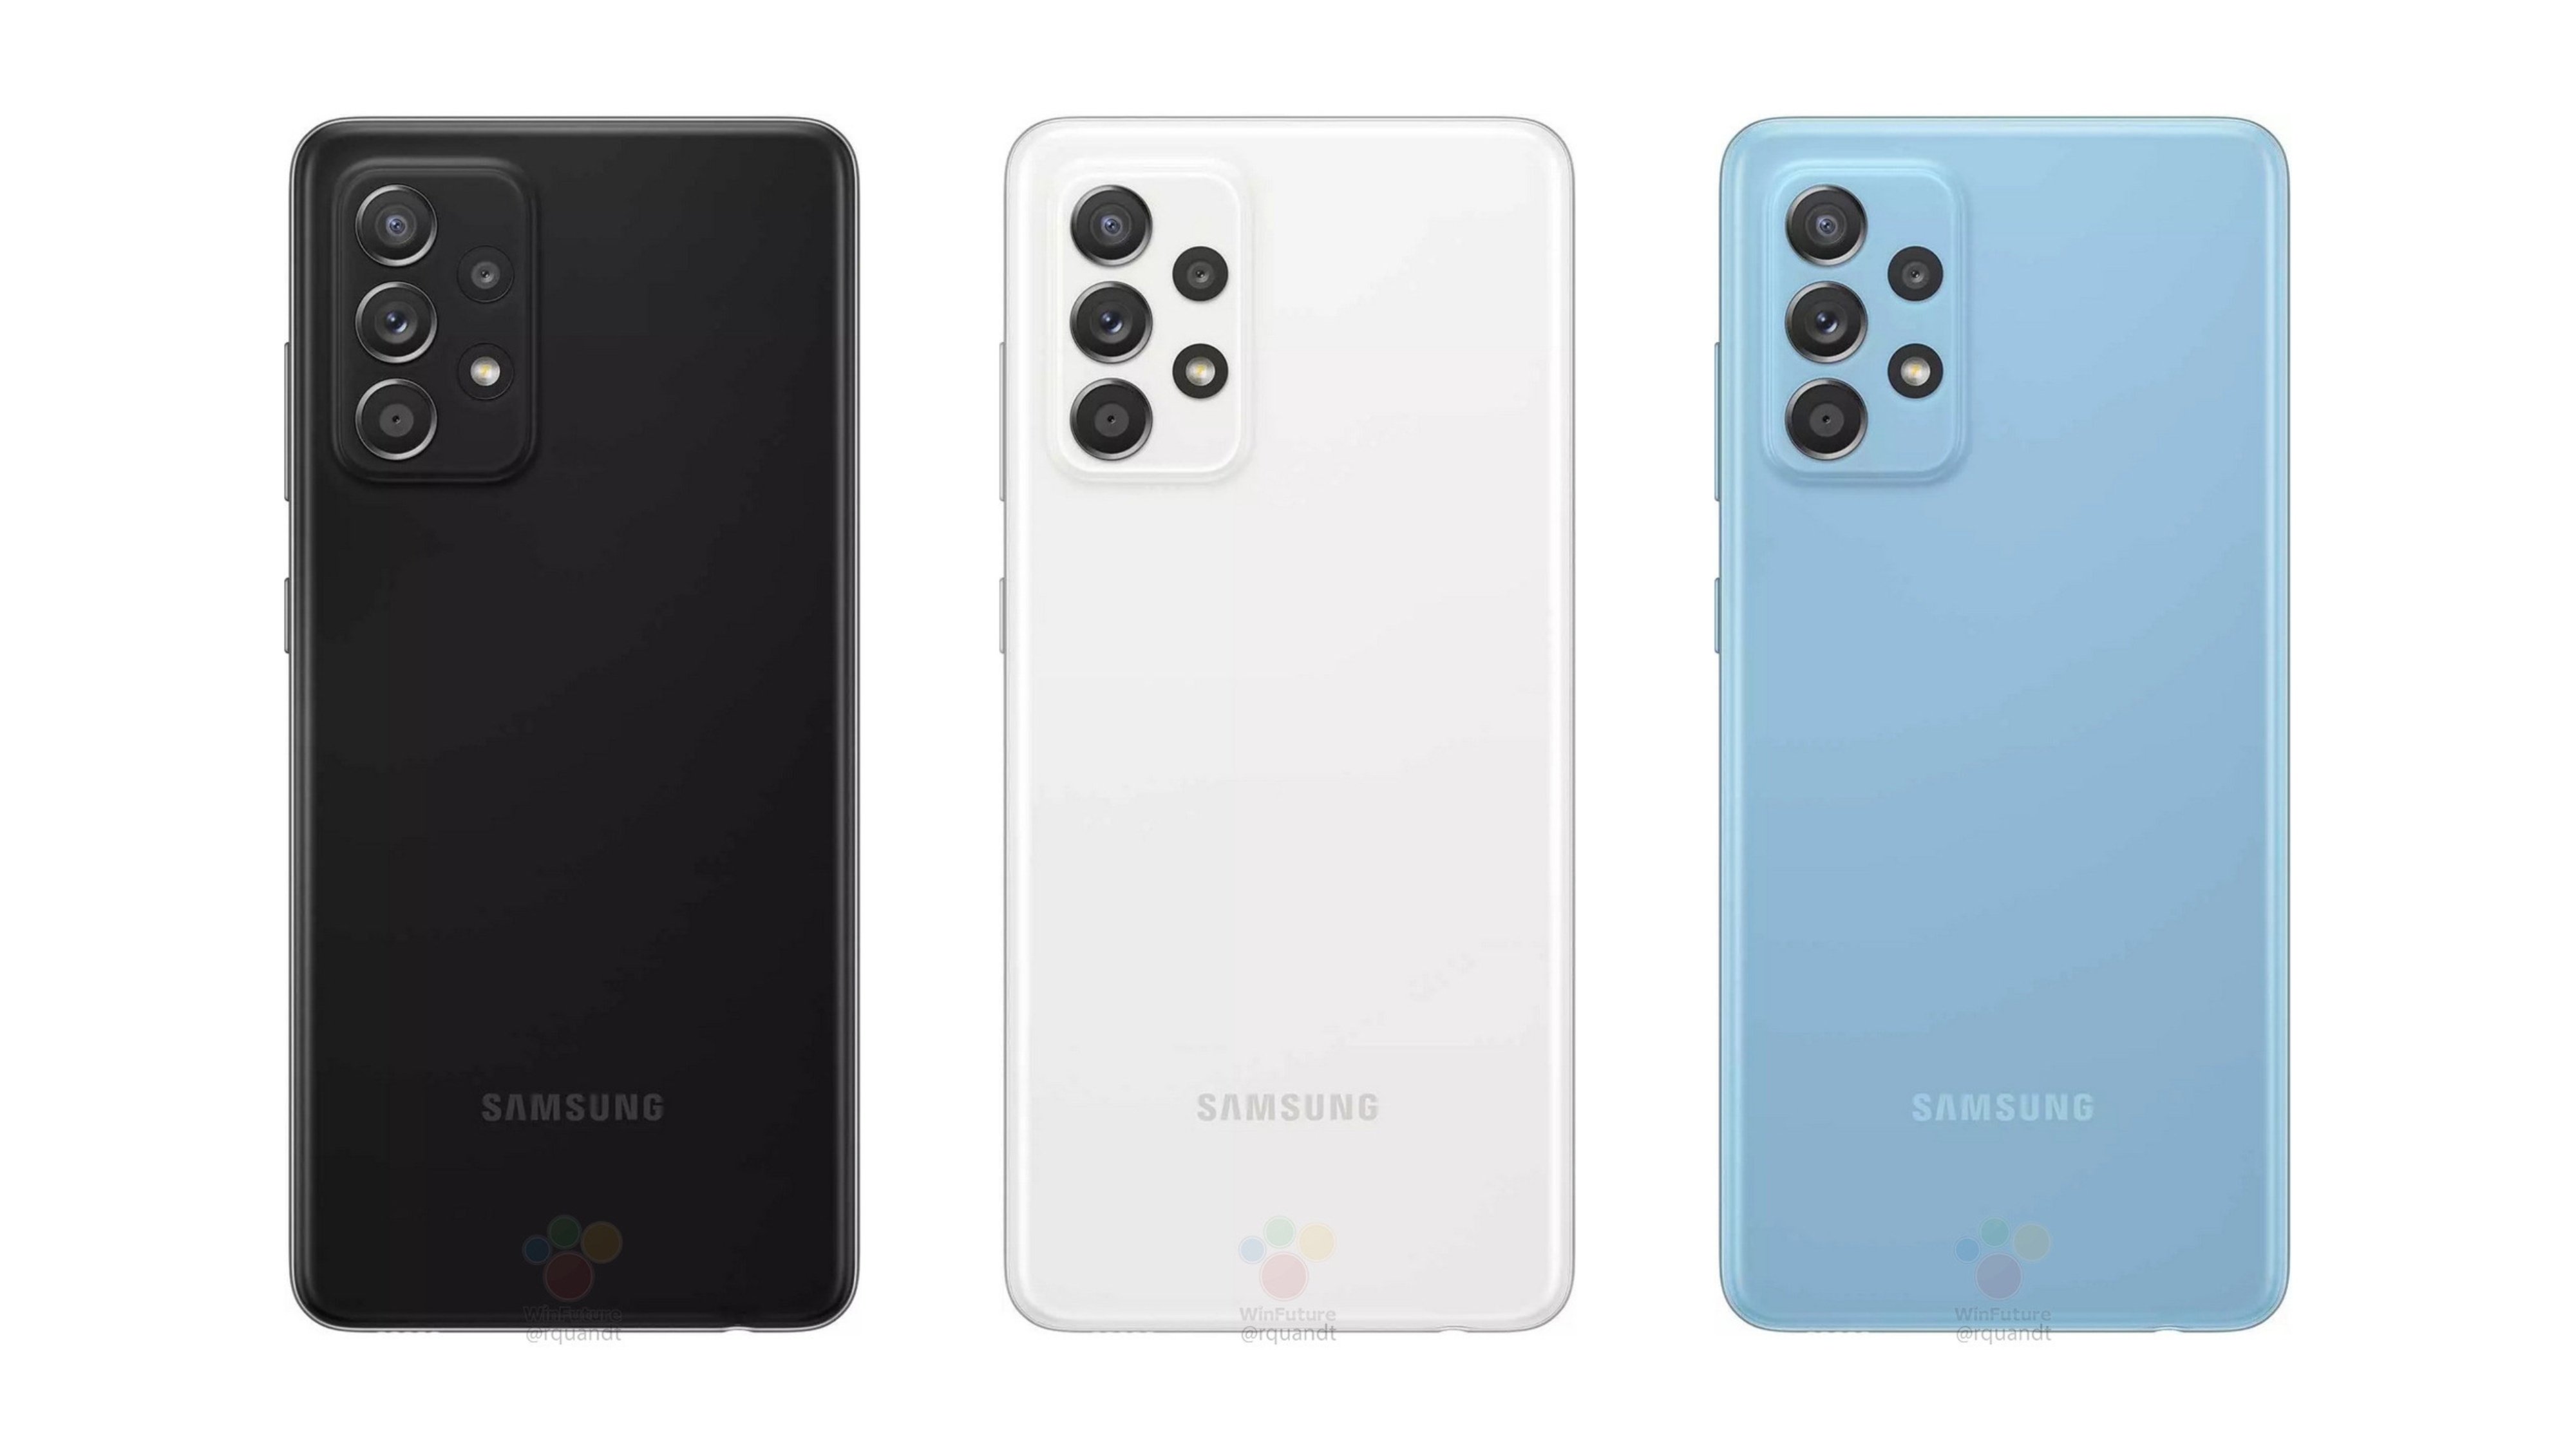 El Samsung Galaxy A52 tendrá OIS y pantalla Super AMOLED de 800 nits